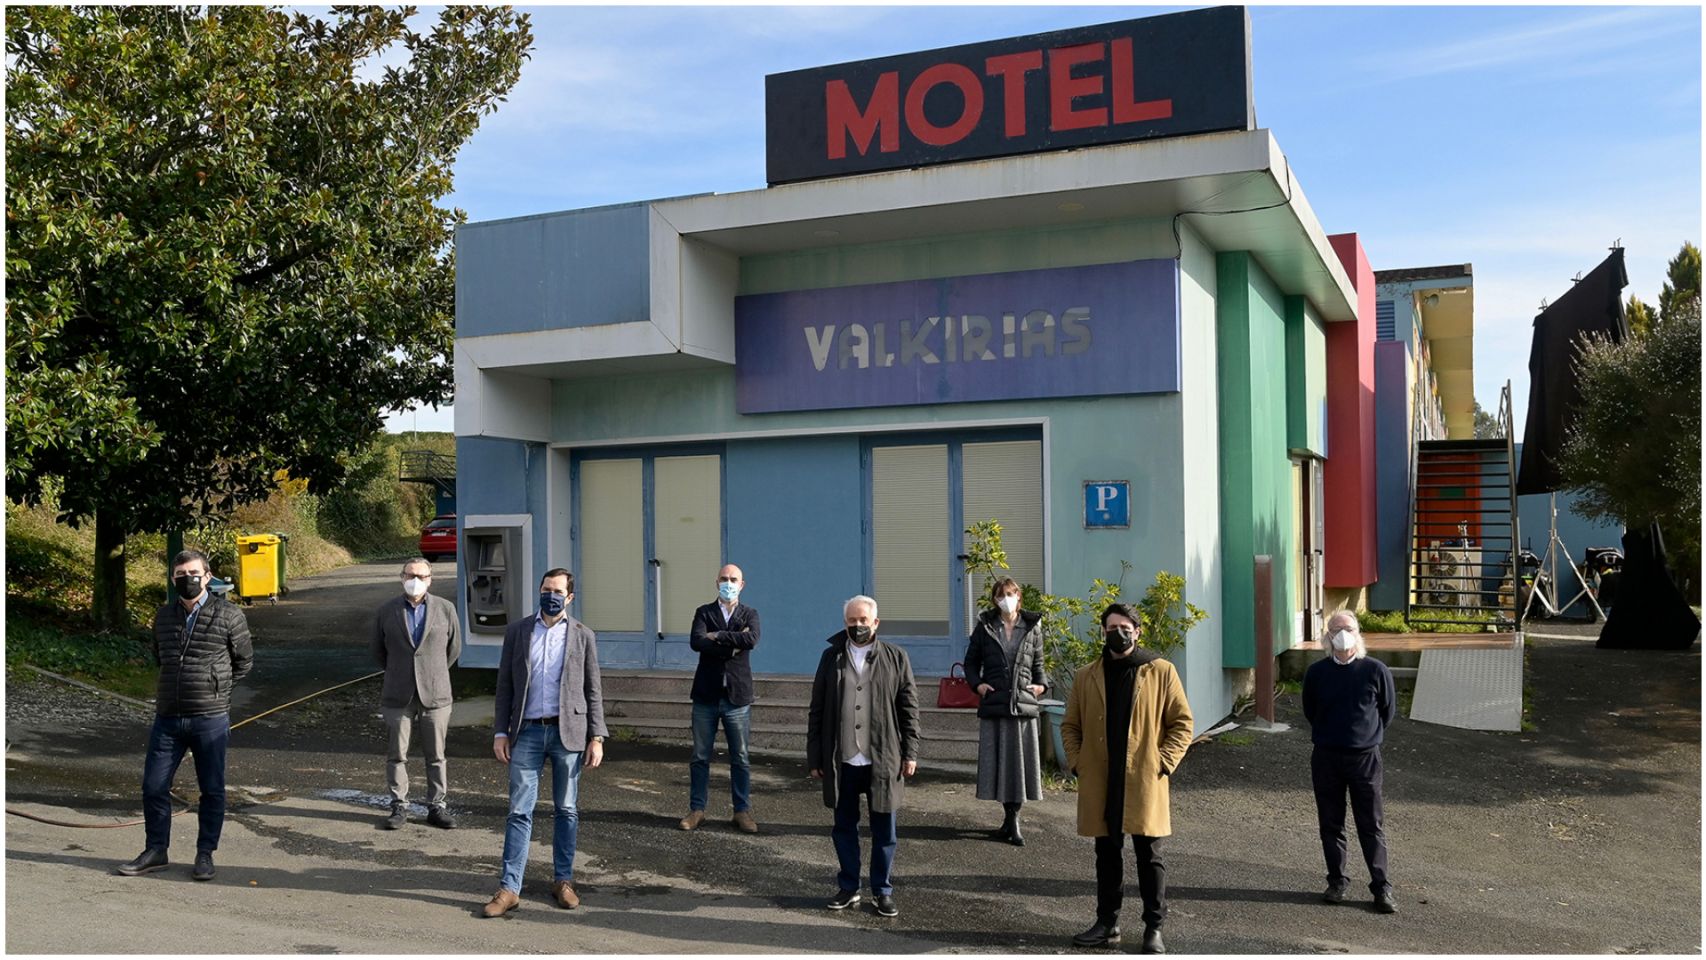 Imagen del primer día de rodaje de "Motel valkirias".